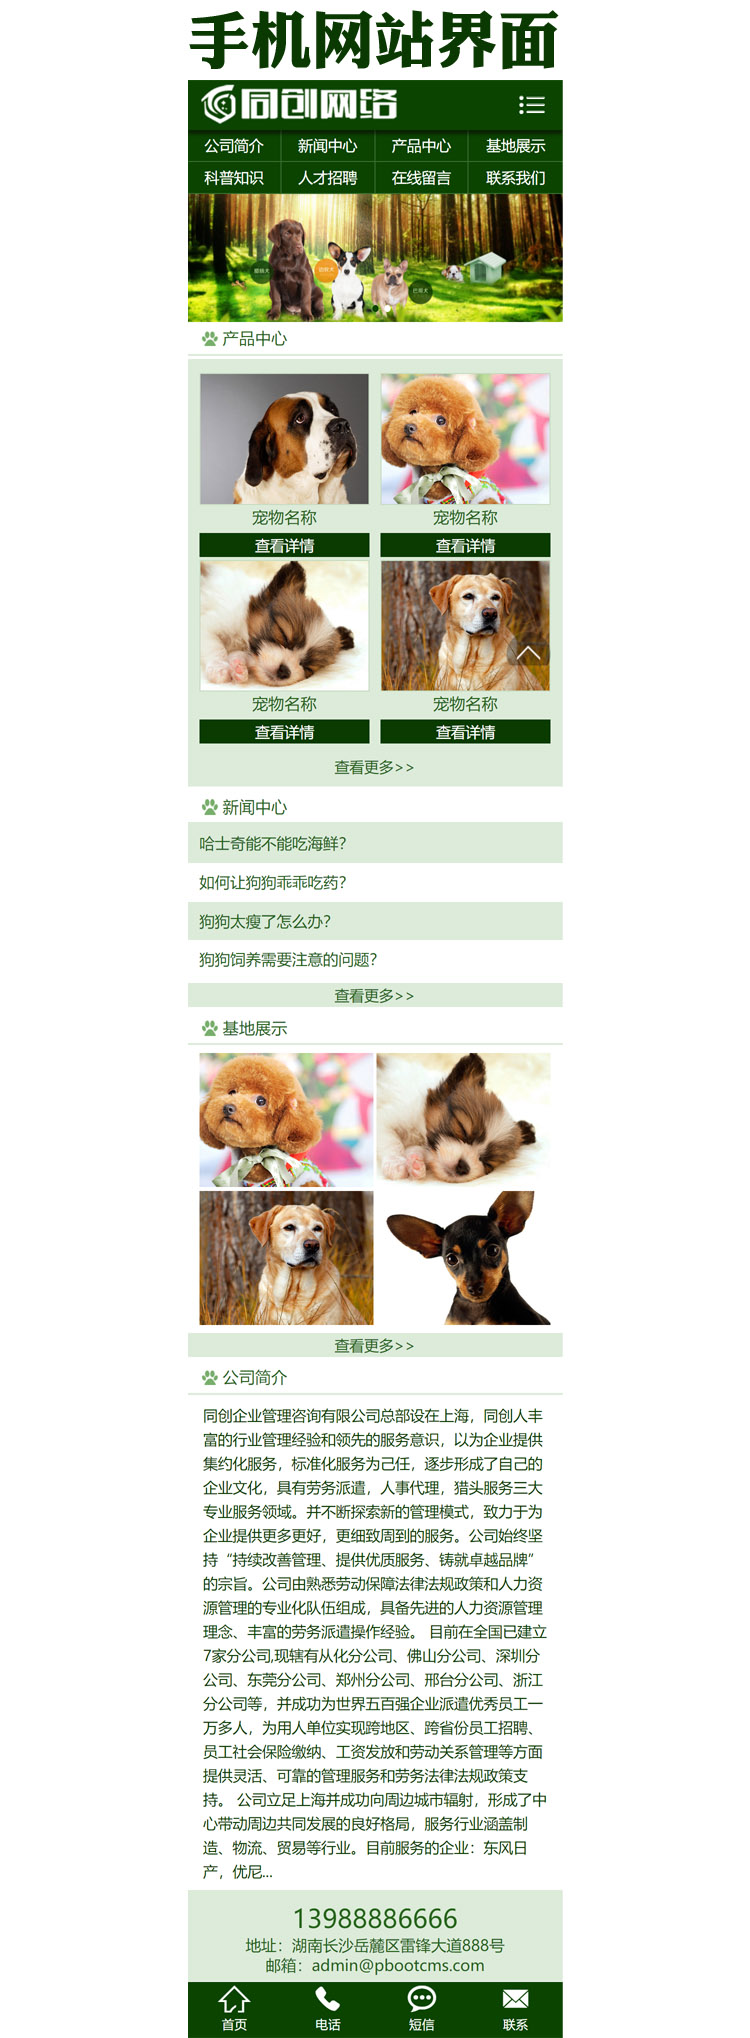 宠物培训基地网站源码程序-XX181-3